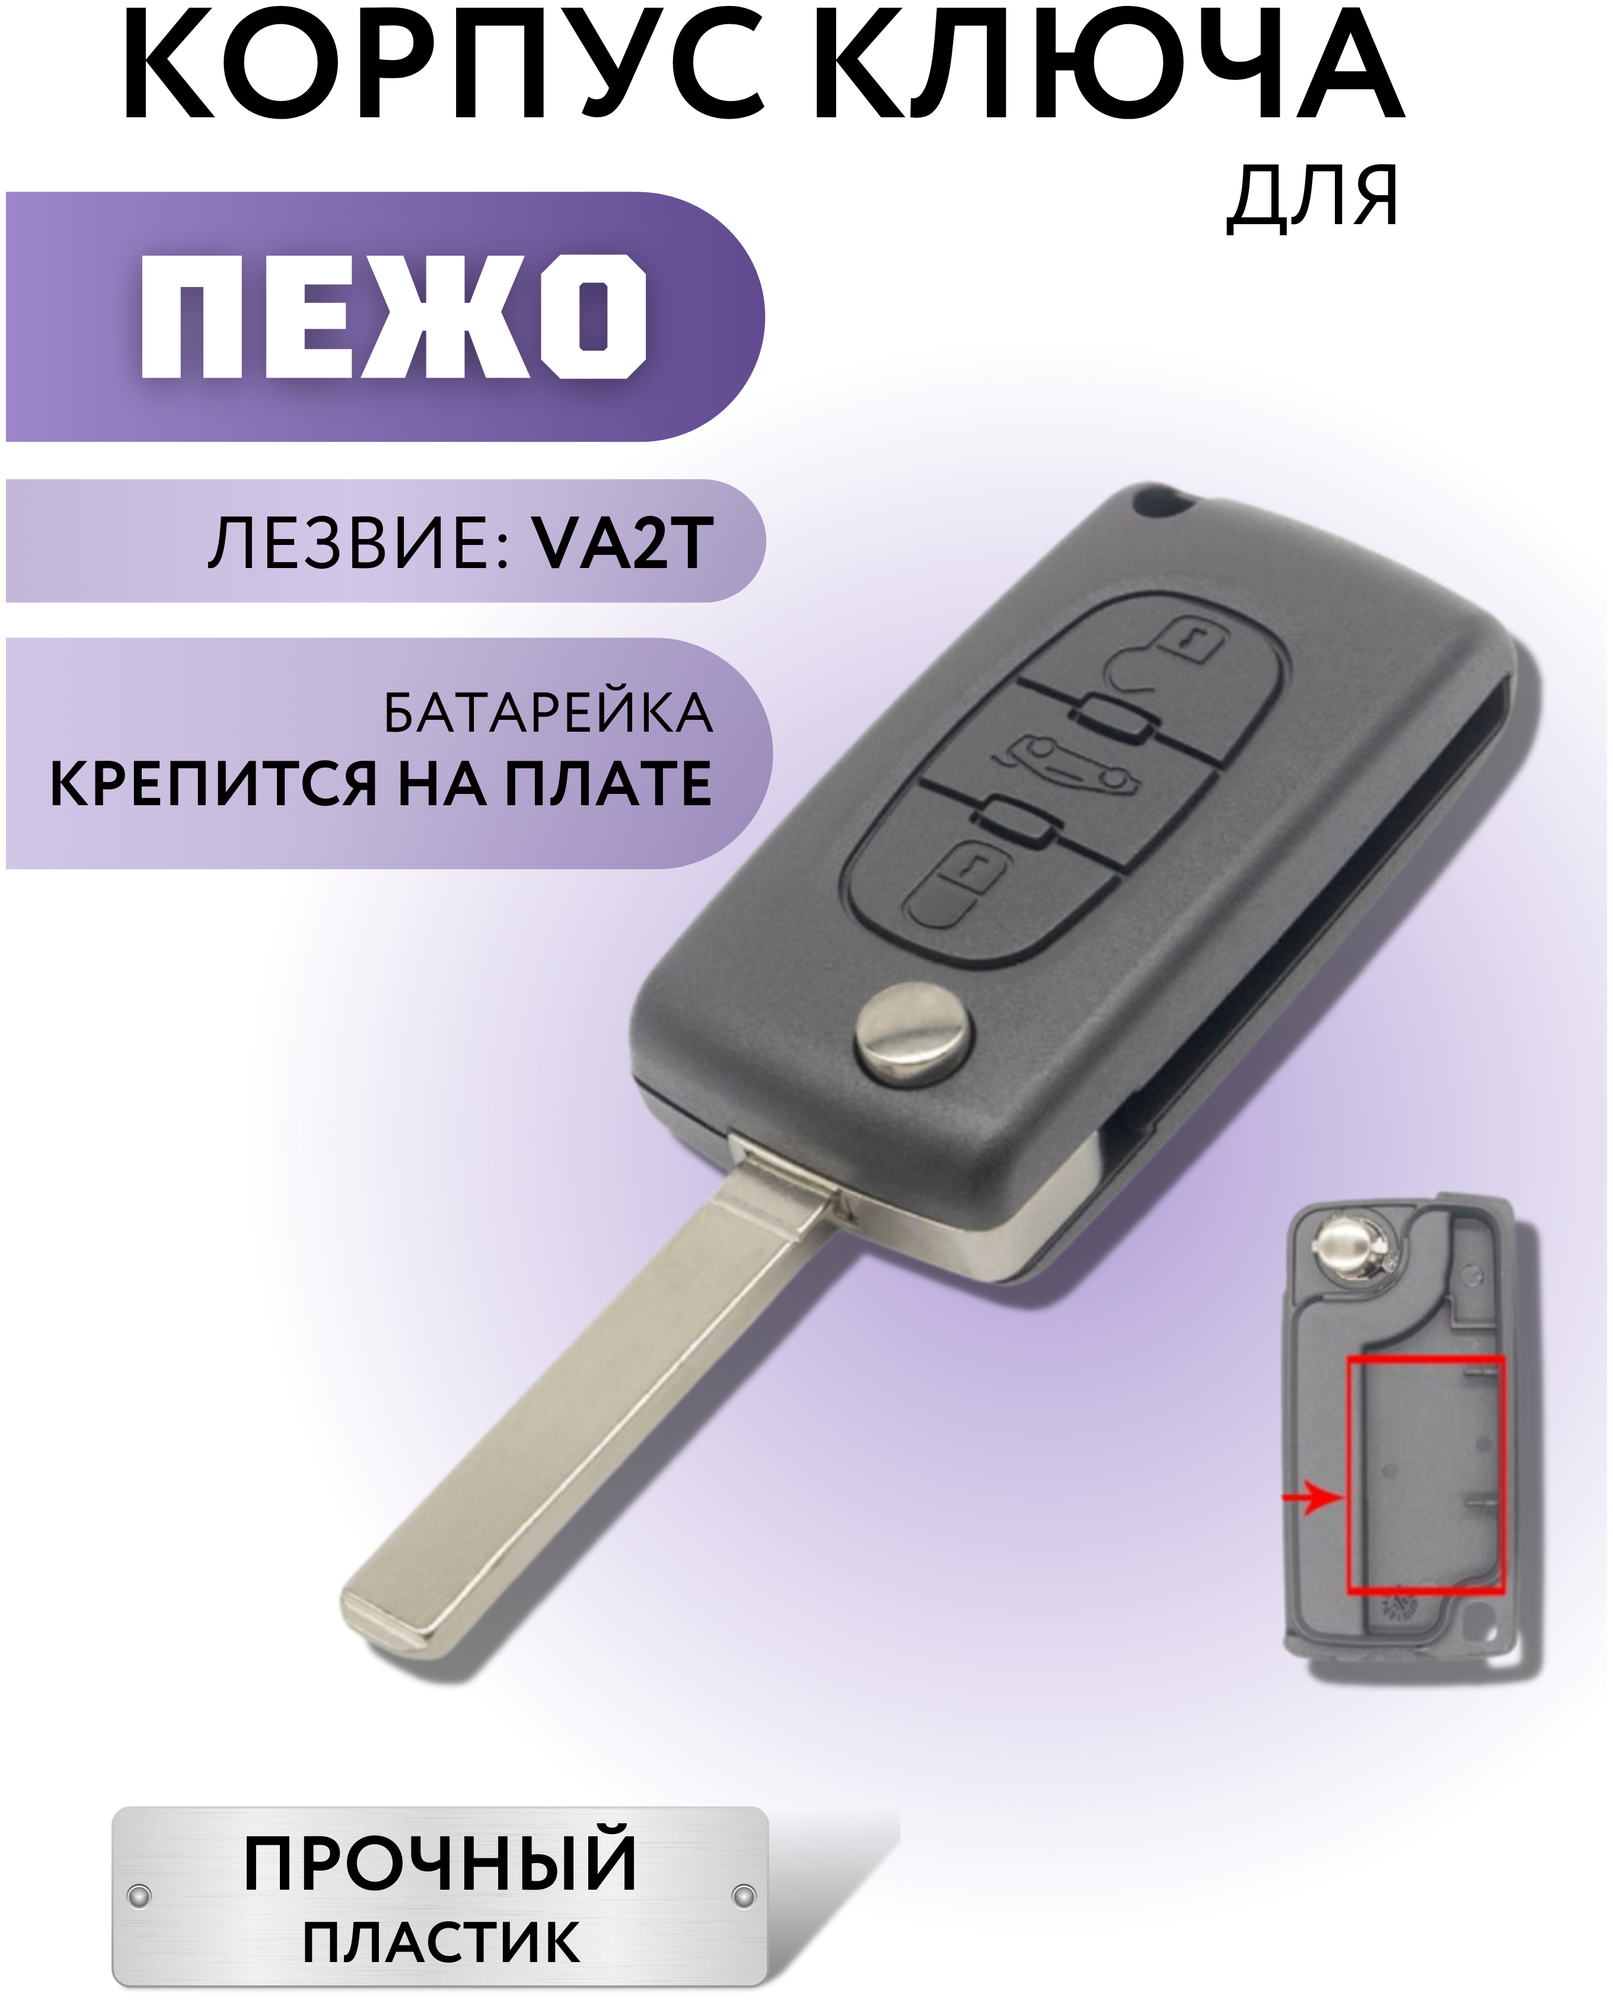 Корпус ключа зажигания для Пежо корпус ключа для Peugeot 3 кнопки батарейка на плате лезвие VA2T